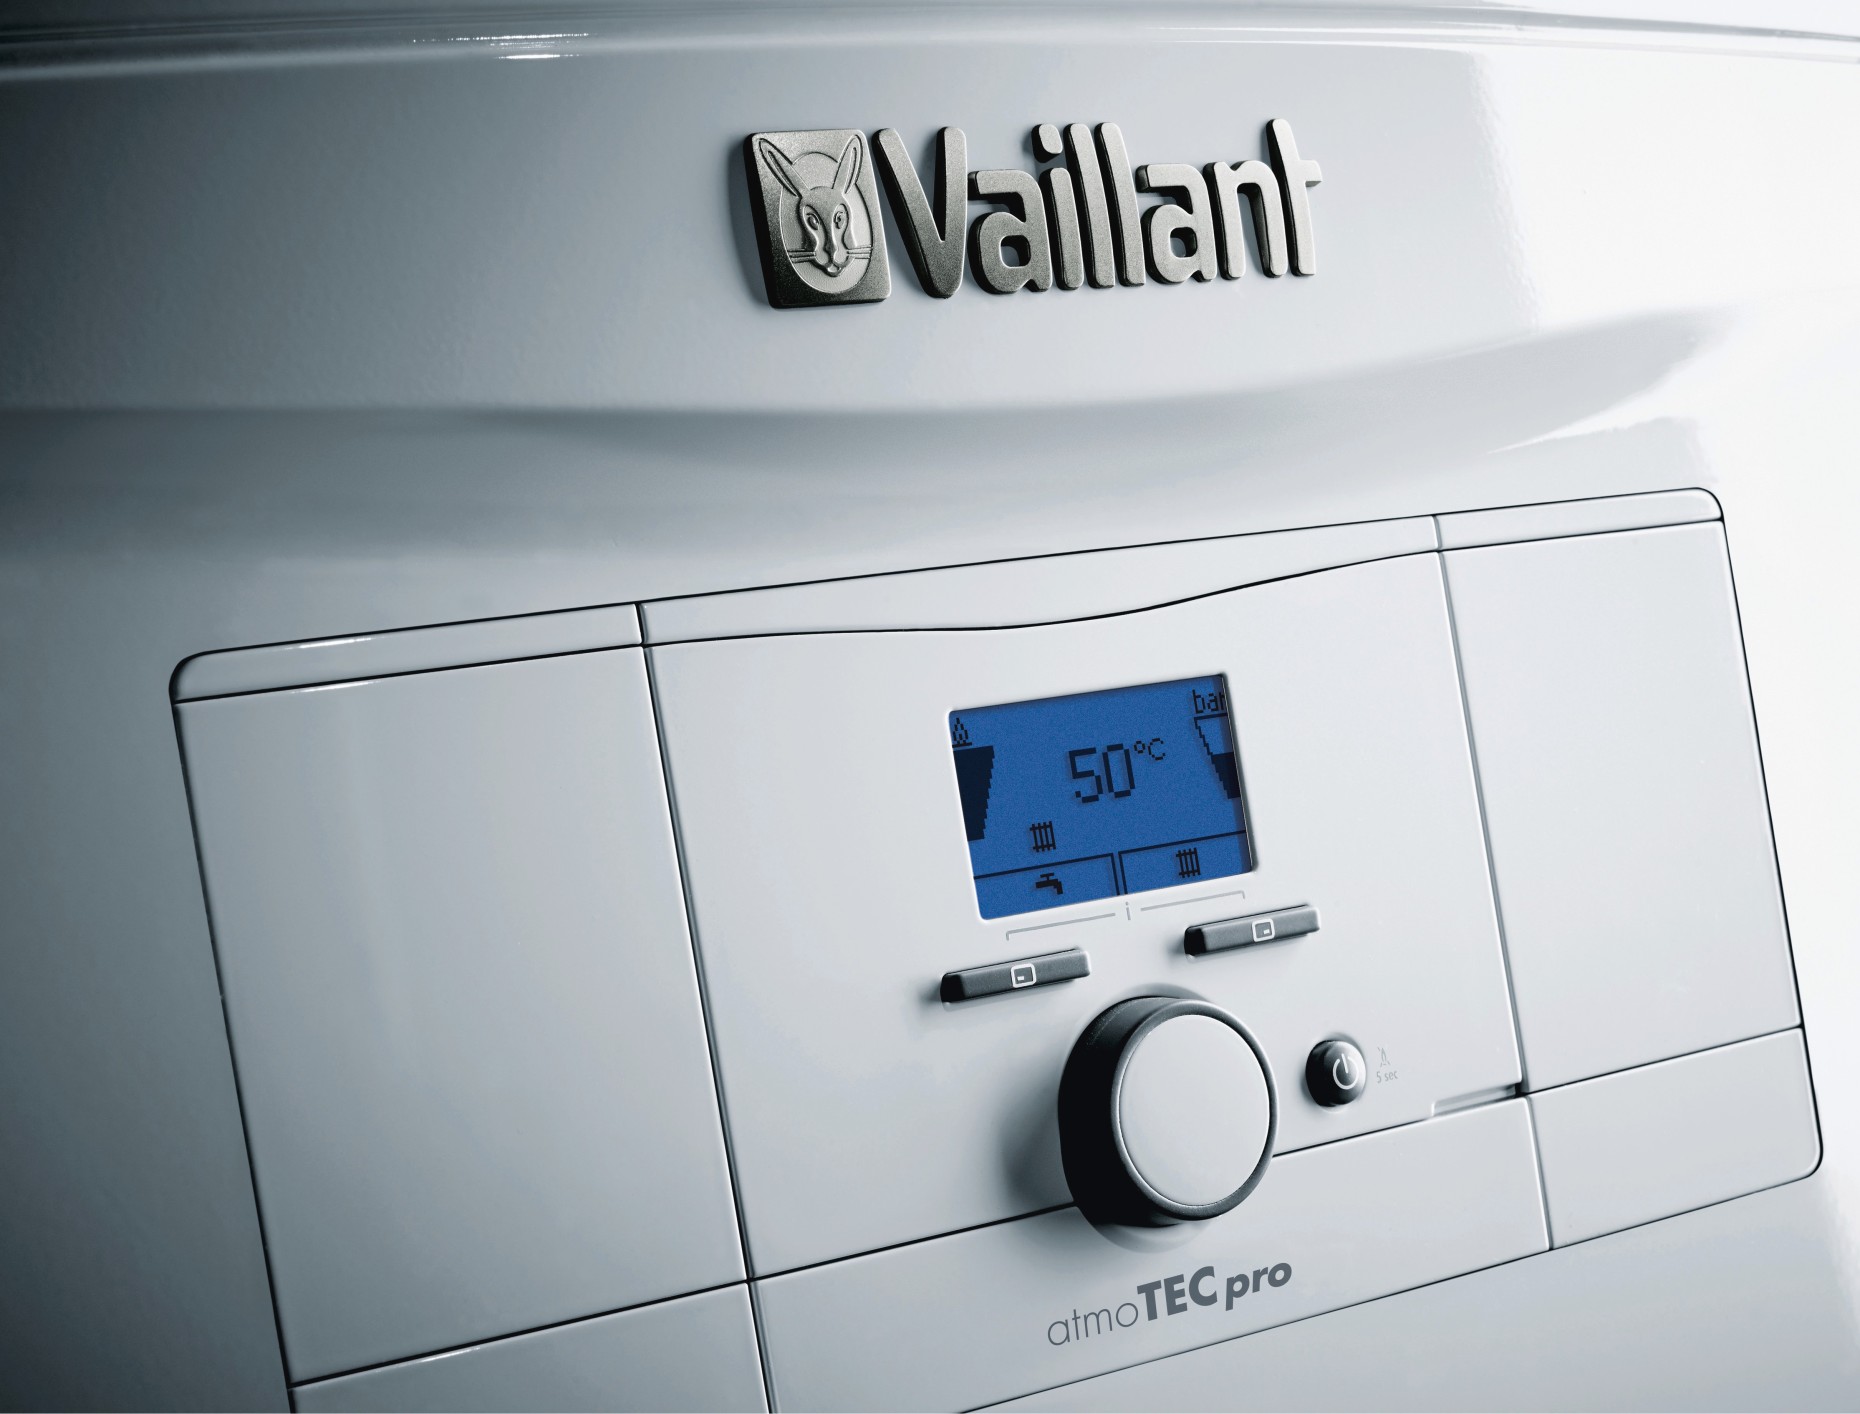 Газовий котел Vaillant atmoTec Pro VUW 240/5-3 ціна 37700.00 грн - фотографія 2